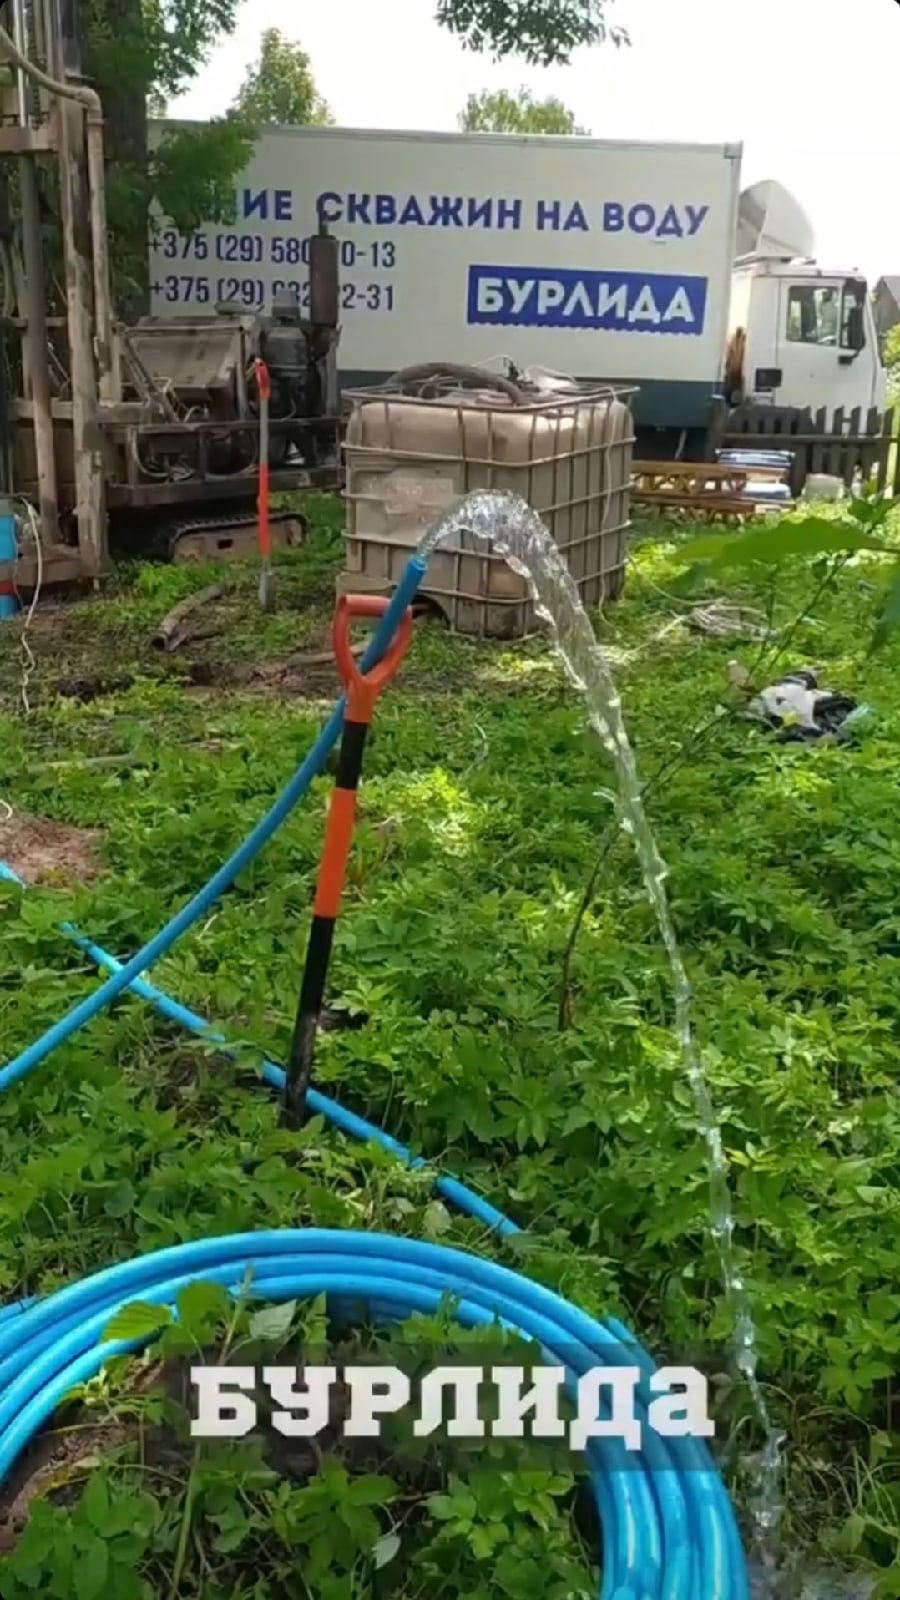 Роторное бурение скважин на воду в Гродно и области, цена